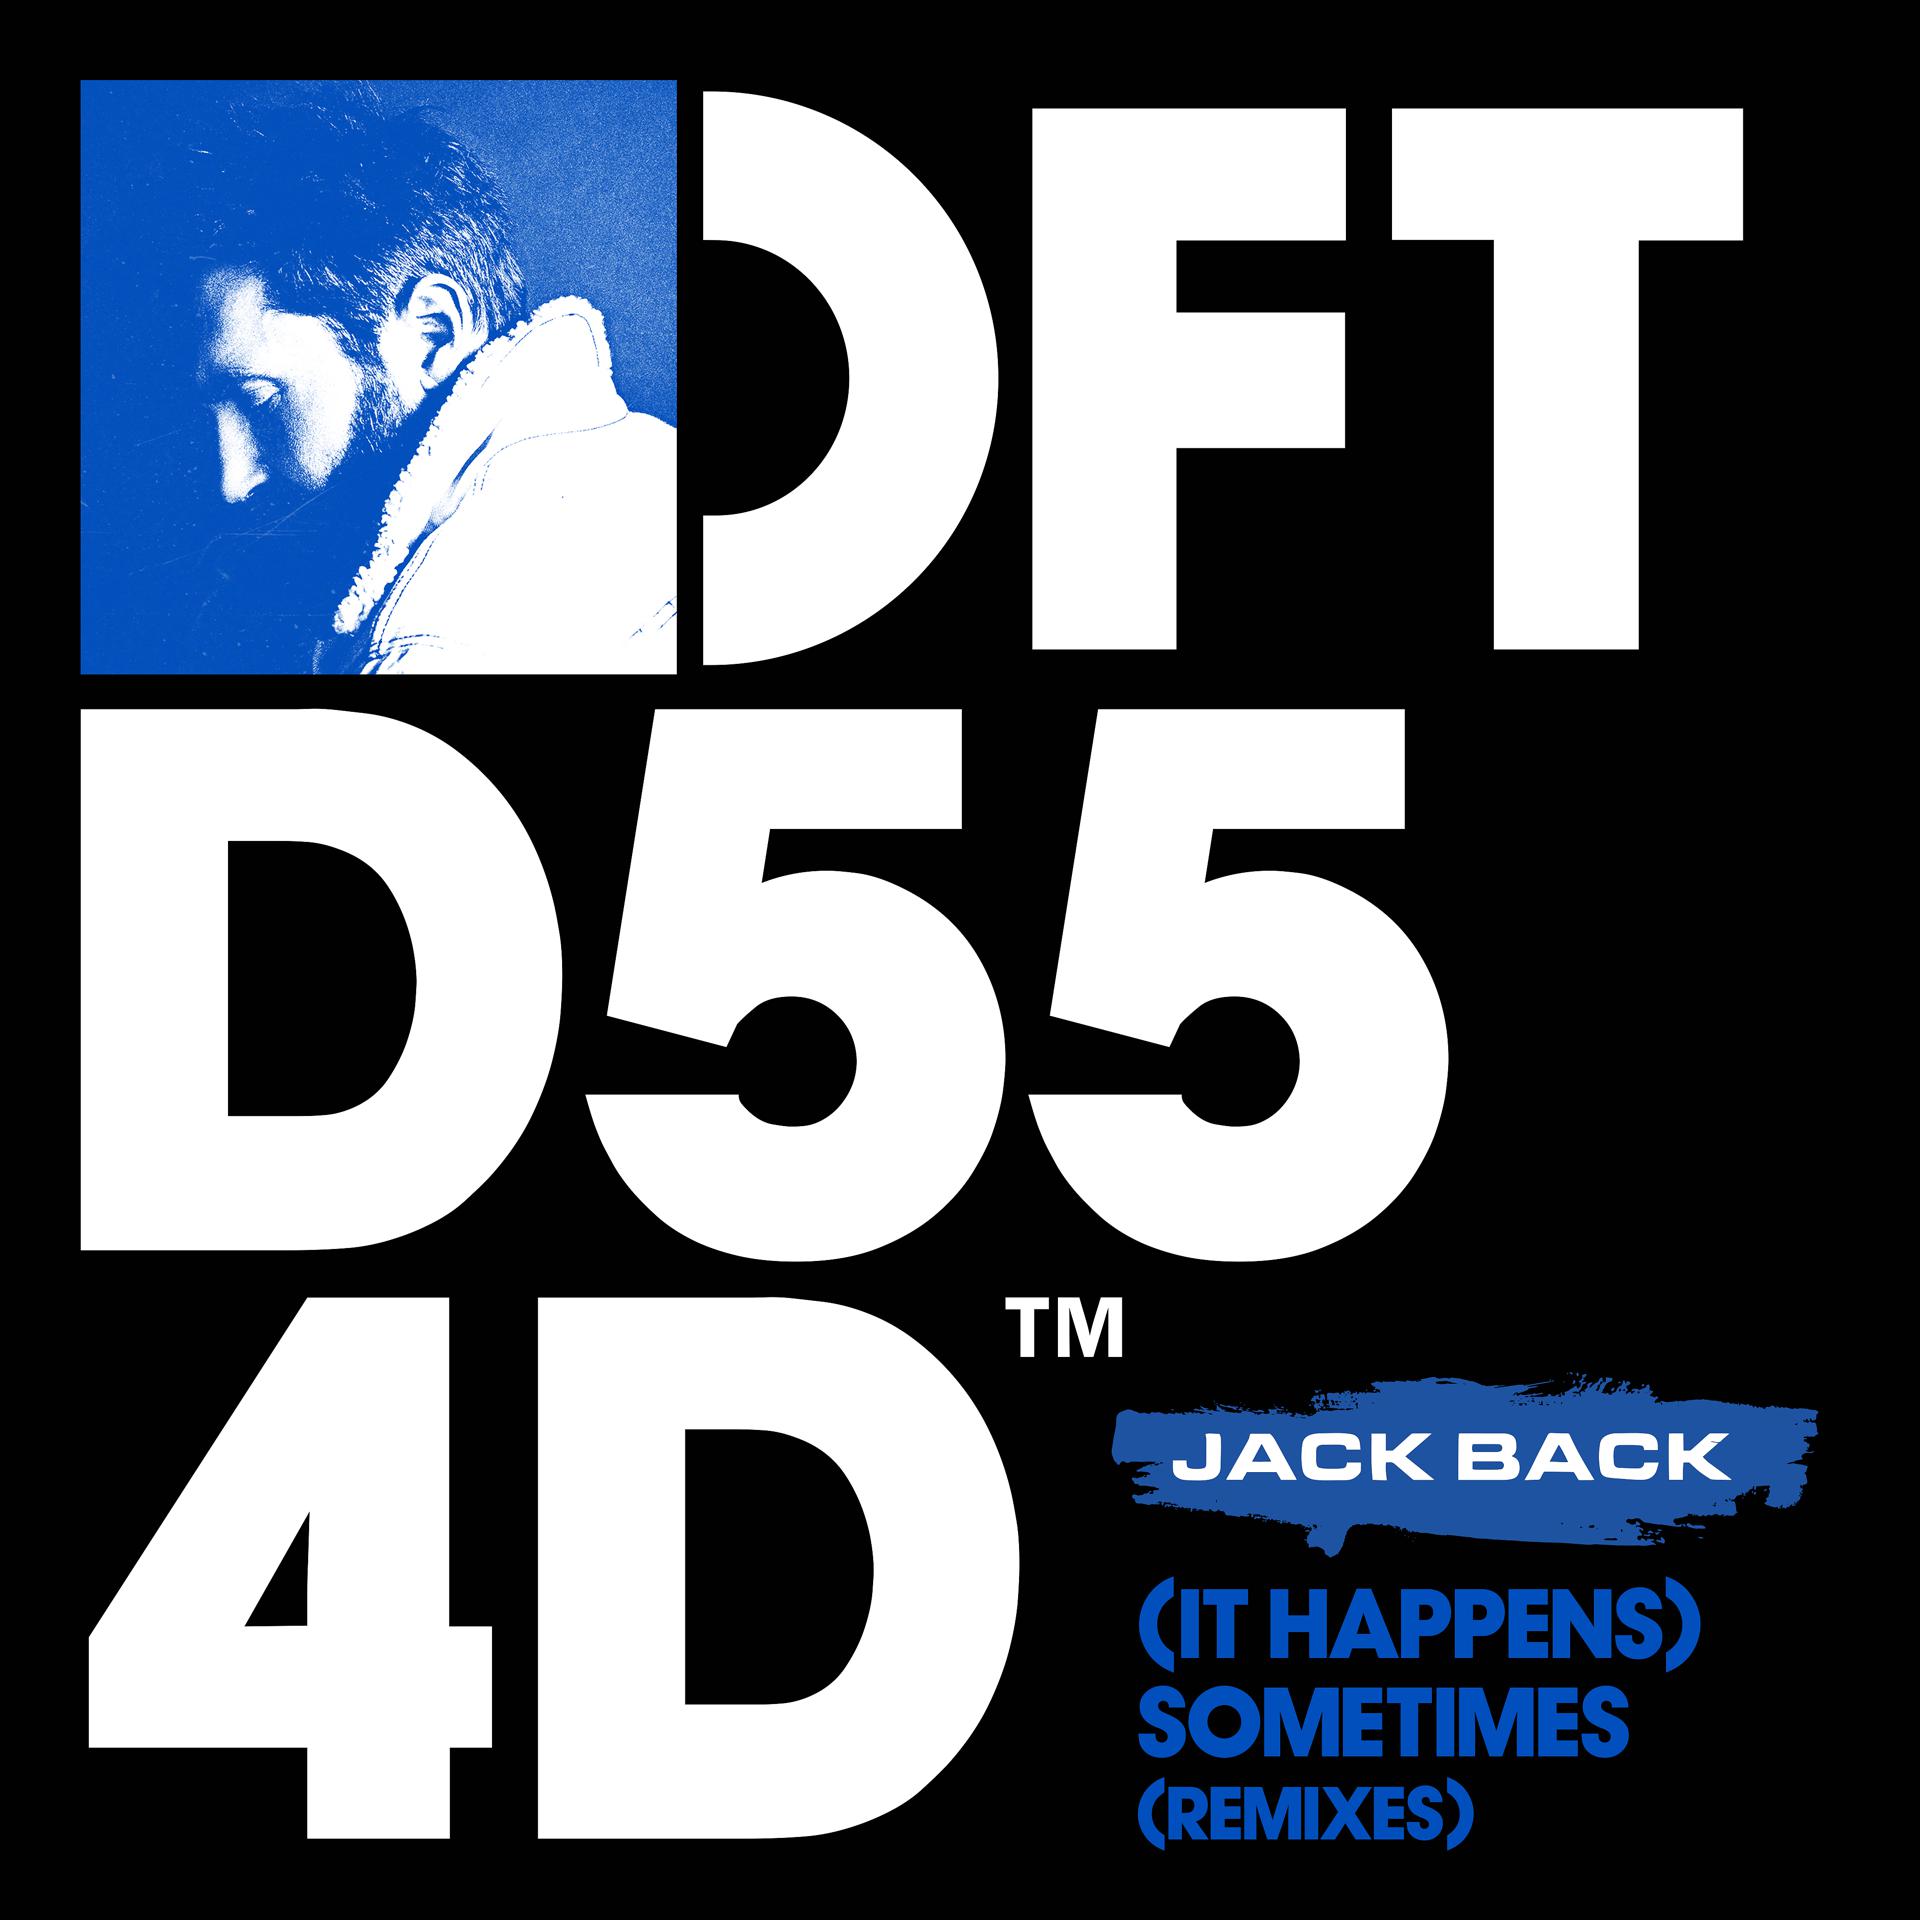 Sometimes happens. Jack back (it happens) sometimes (Extended Mix). Самтаймс ремикс. It happens. Some time Remix.